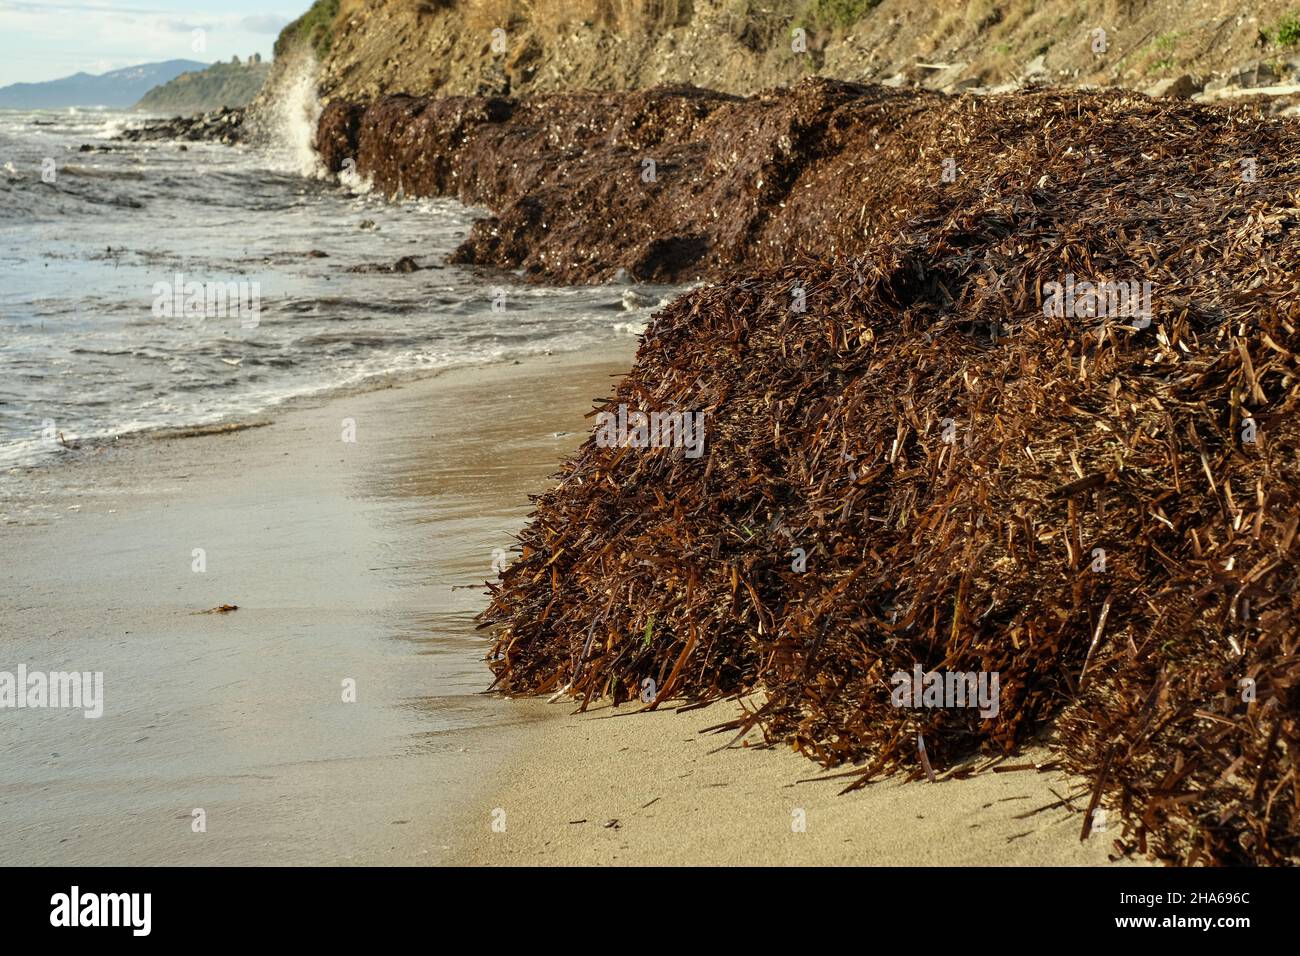 Meeresalgen-Verschmutzung an der Meeresküste, globale Erwärmung auf marine Ökosysteme Stockfoto